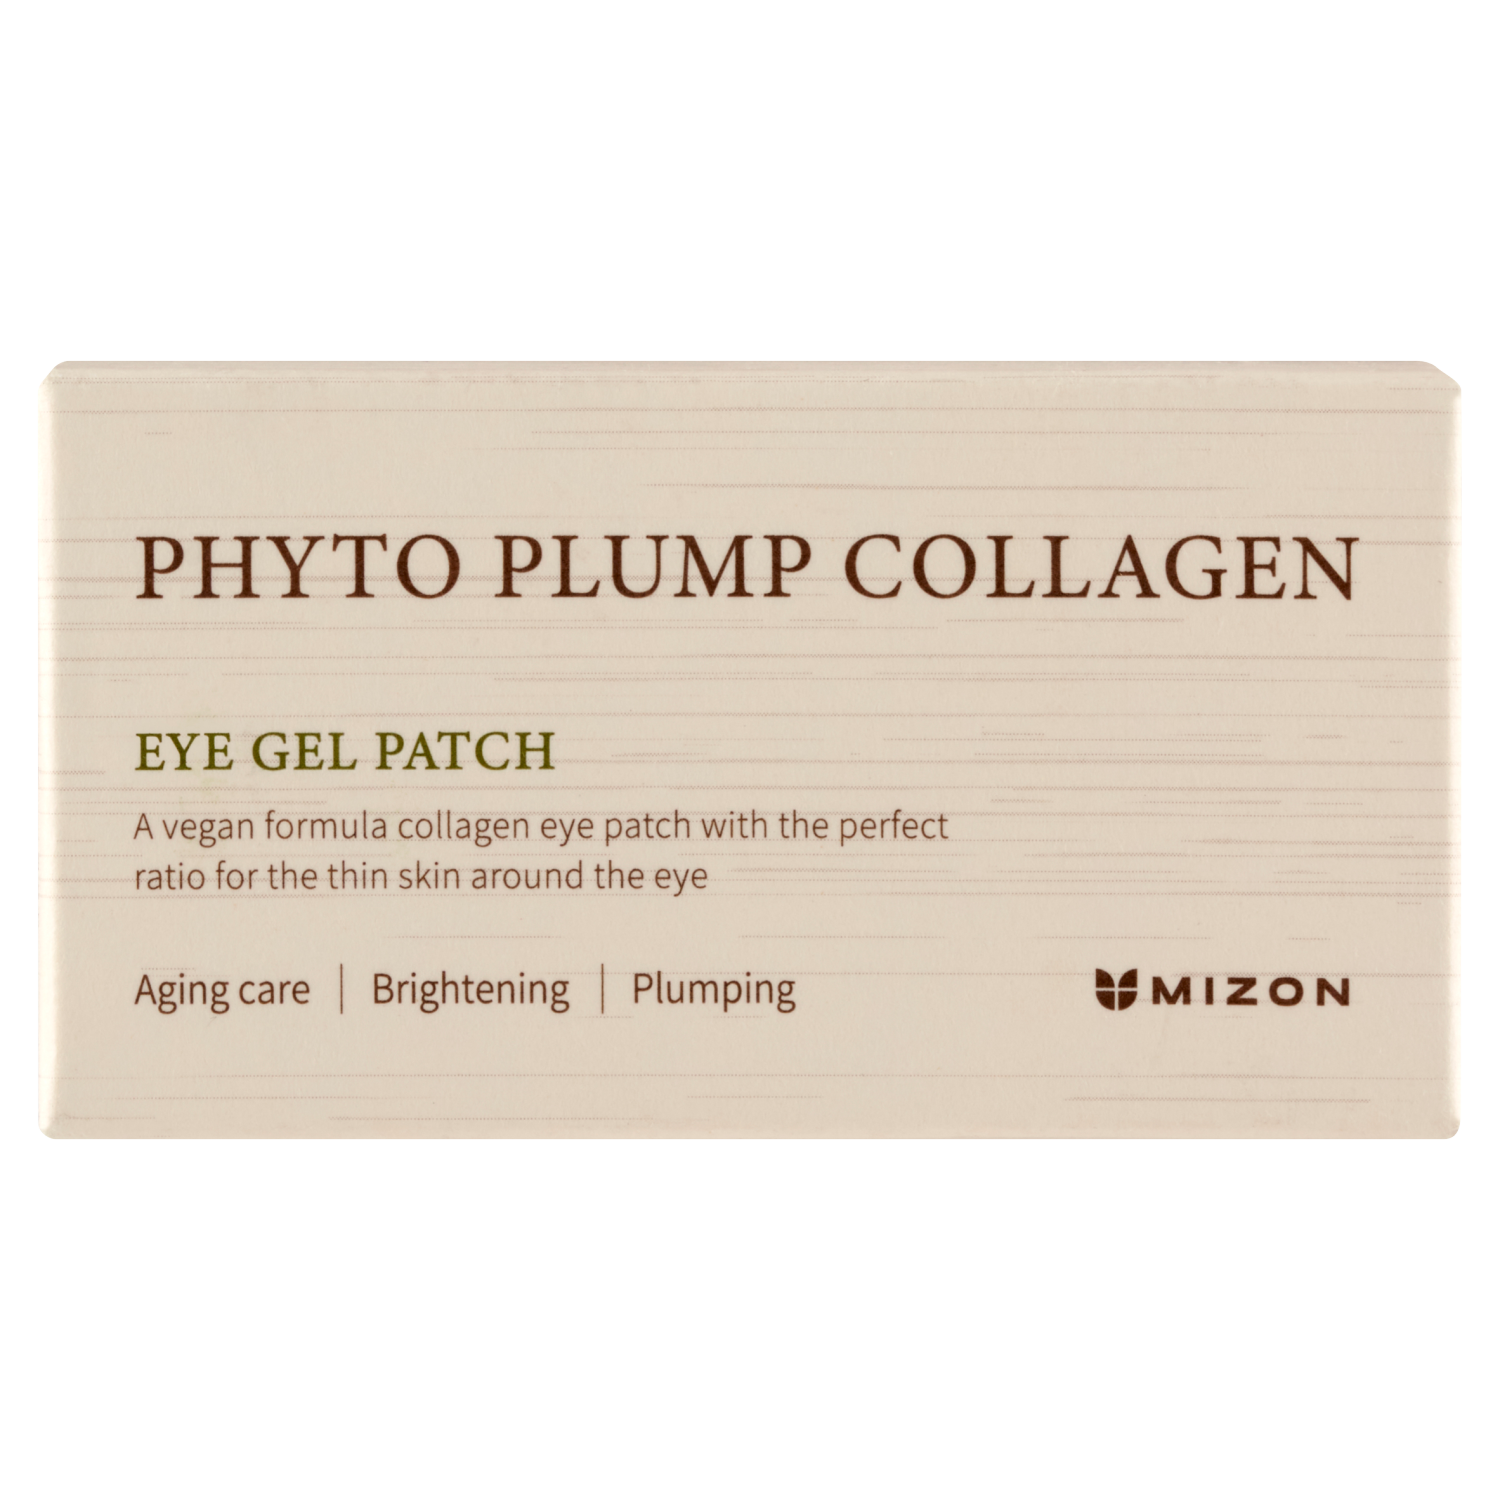 Лифтинг-патчи для глаз Mizon Phyto Plump Collagen, 60 штук патчи для глаз увлажняющие с коллагеном и гиалуроновой кислотой aronyx hyaluronic acid 60 шт